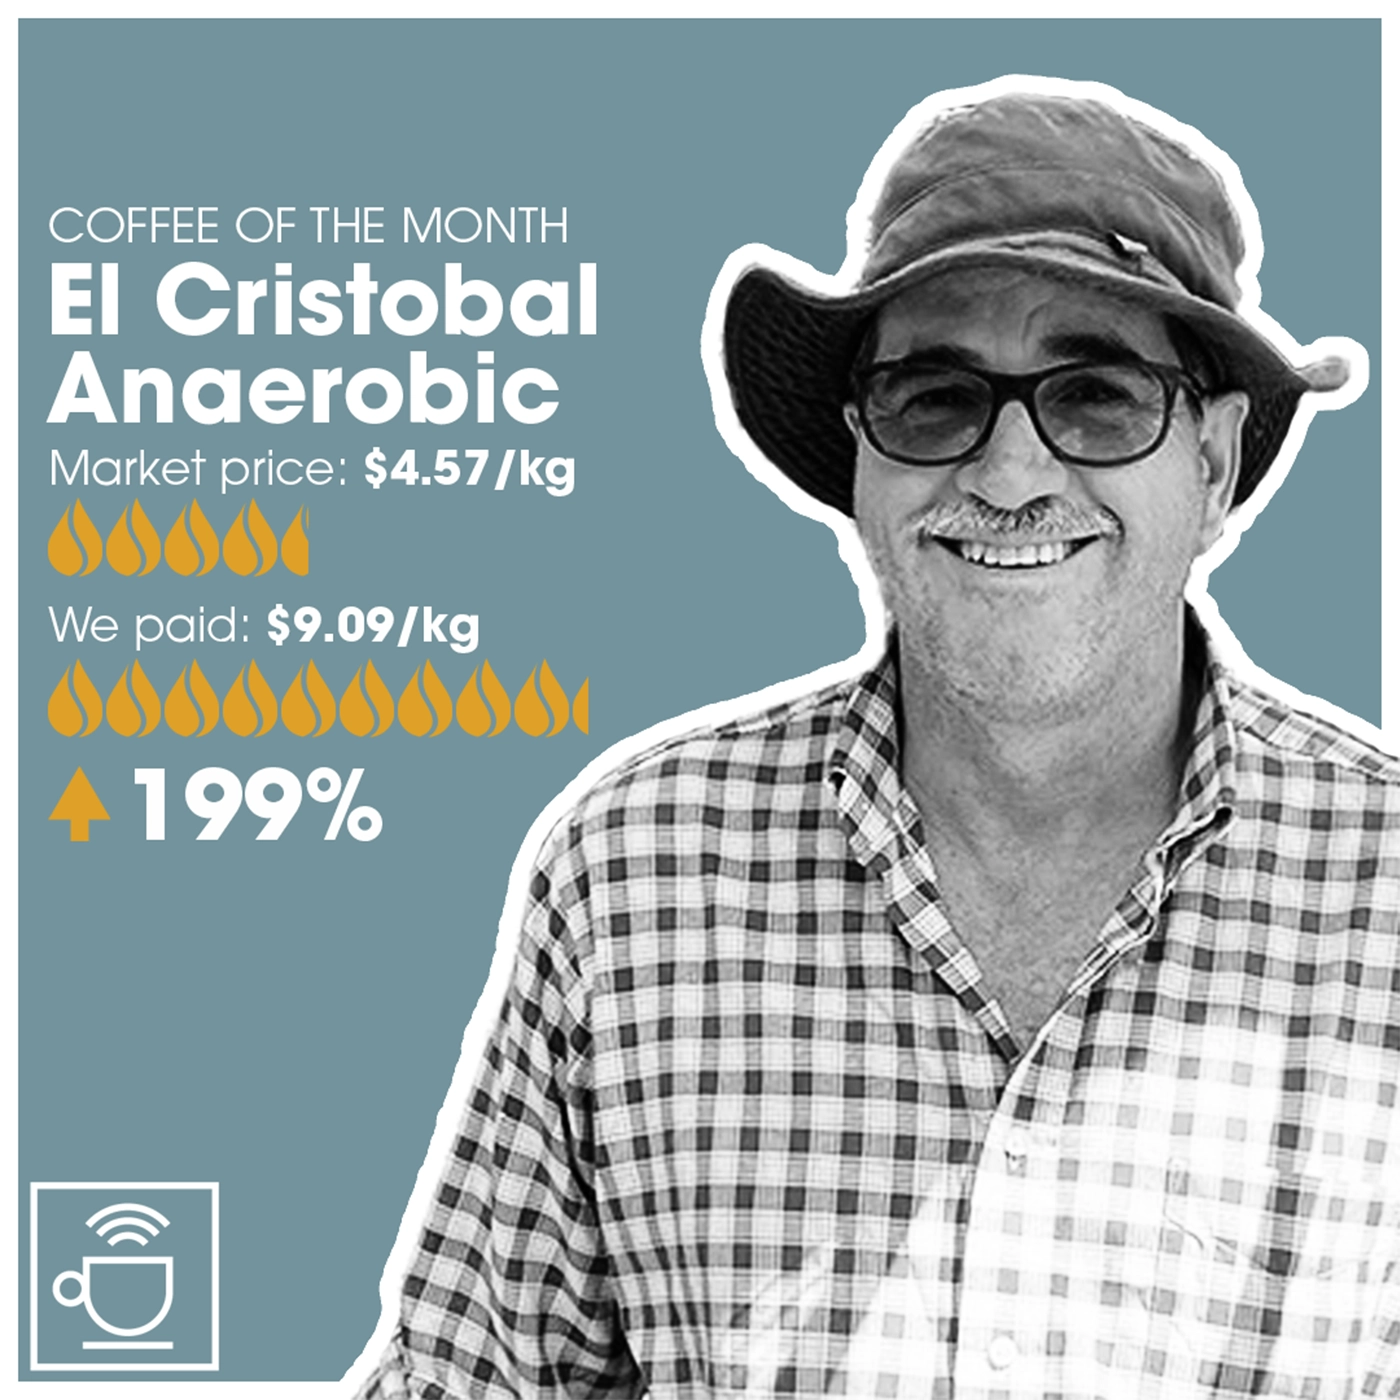 månedens kaffe el cristobal anaerobic, markedspris $4,57/kg, CleverCoffee betalte $9,09/kg, 199% over markedspris 